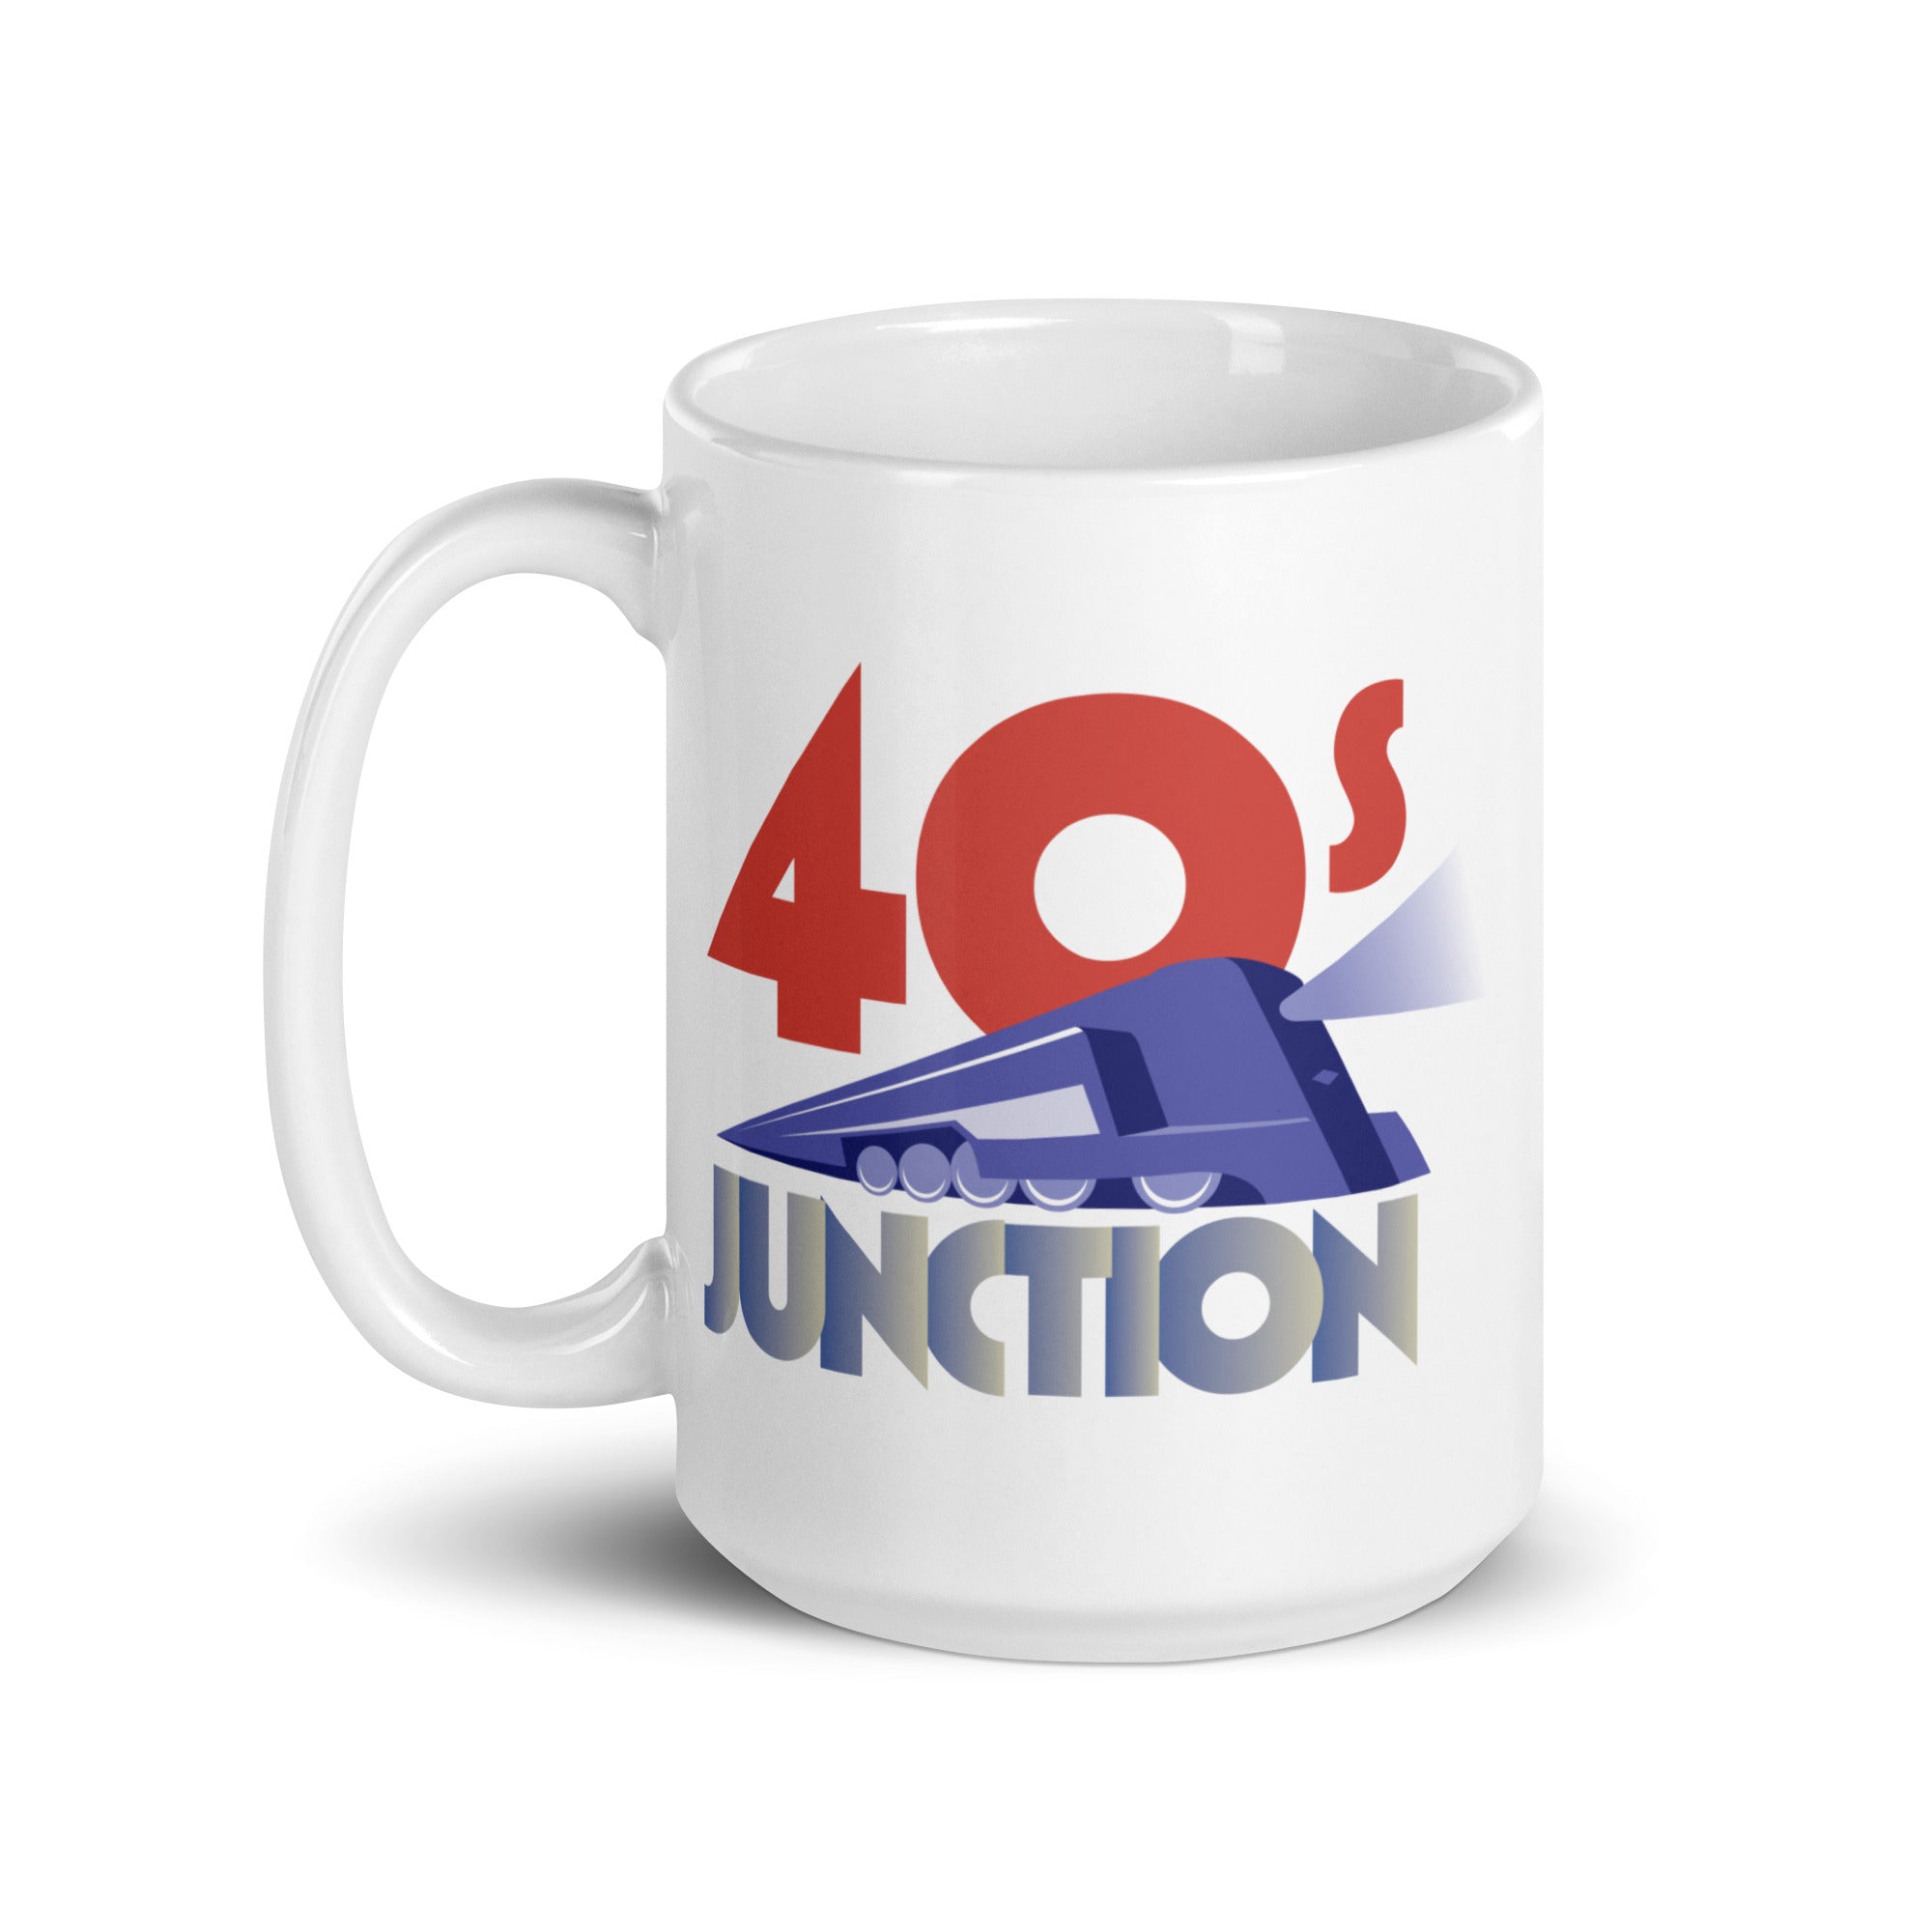 40s Junction: Mug